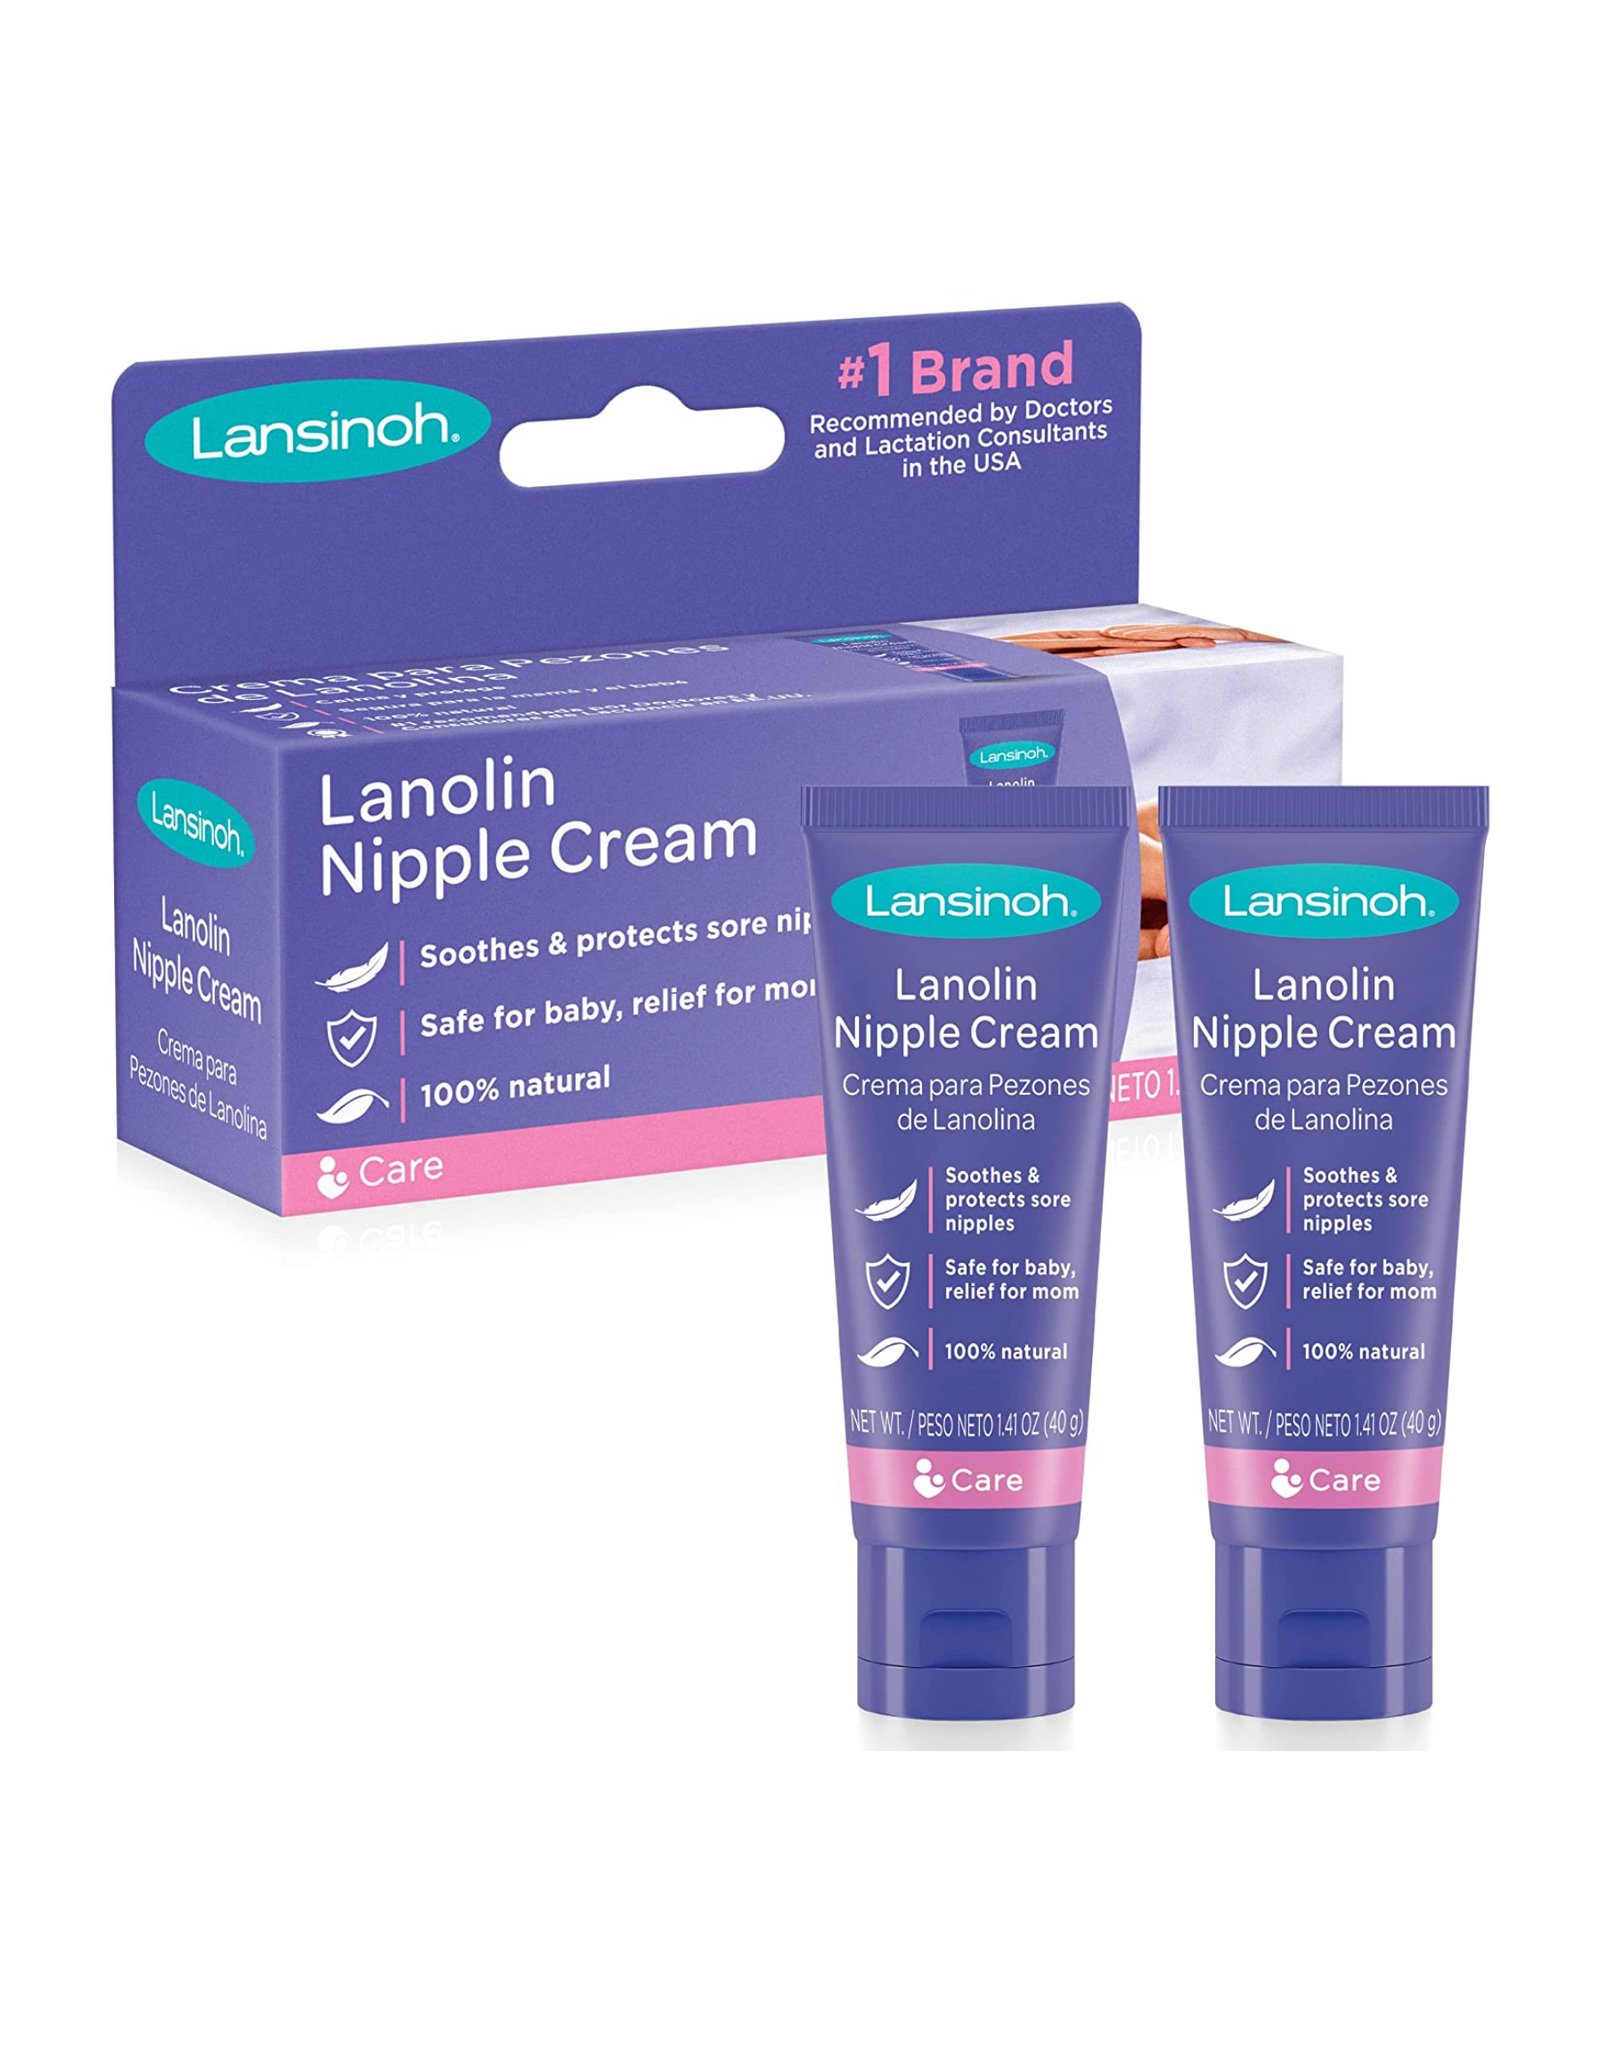 Lansinoh Lanolin Nipple Cream for Breastfeeding, 1.41 Oz each (Pack of 2)